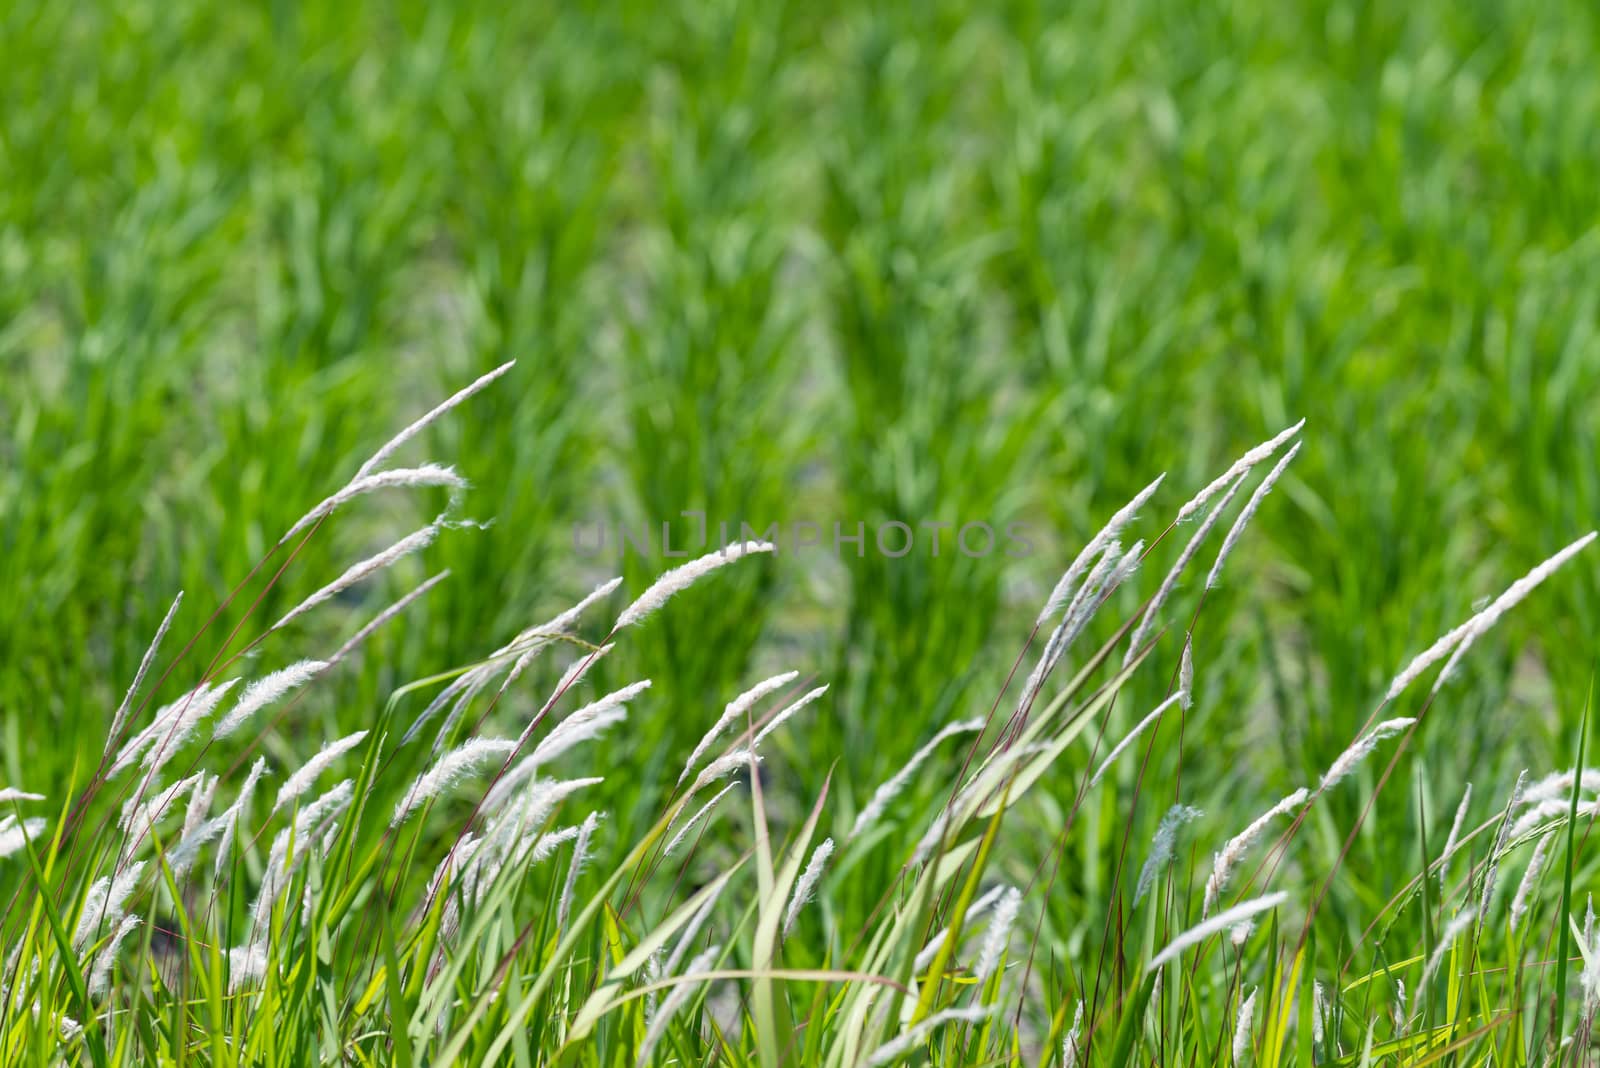 Stalks of Grass by justtscott